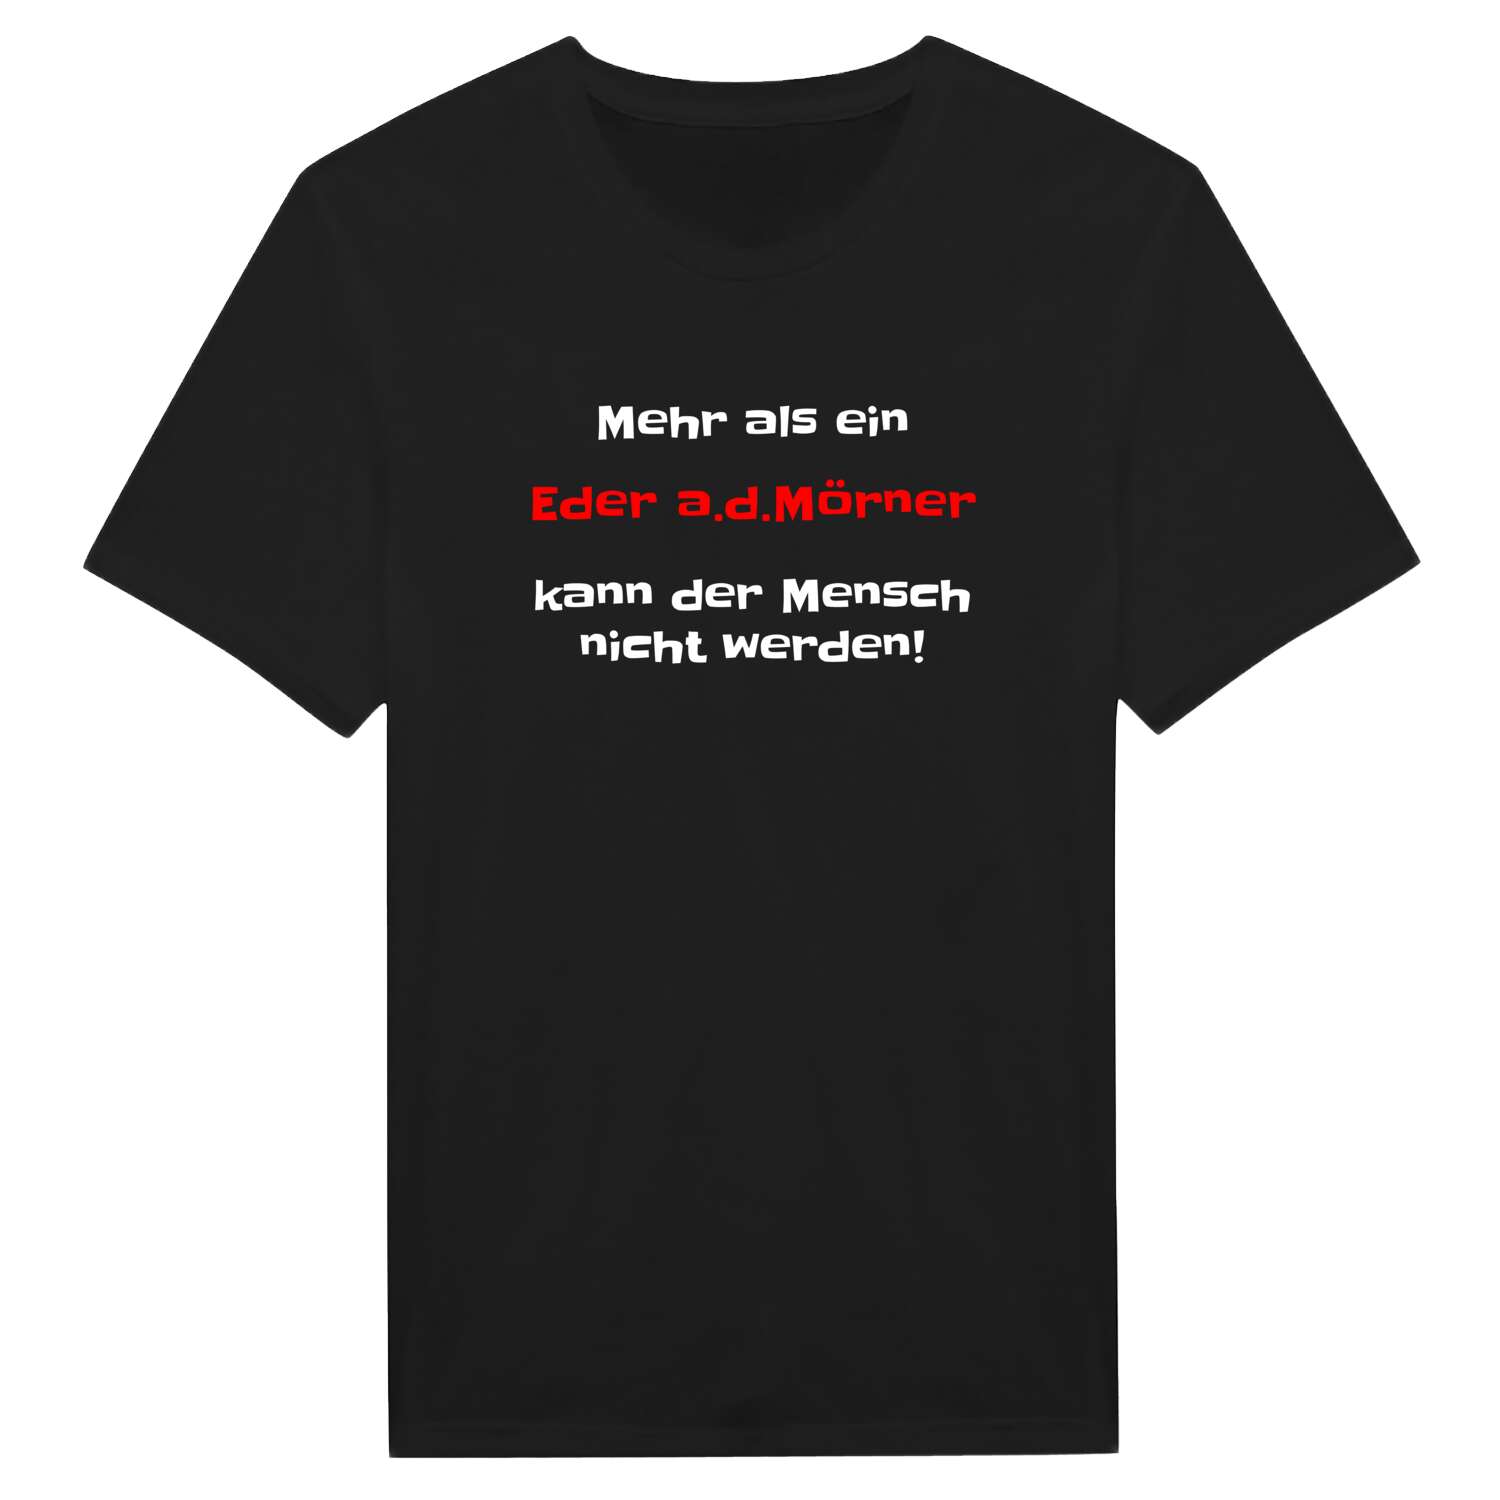 Eder a.d.Mörn T-Shirt »Mehr als ein«